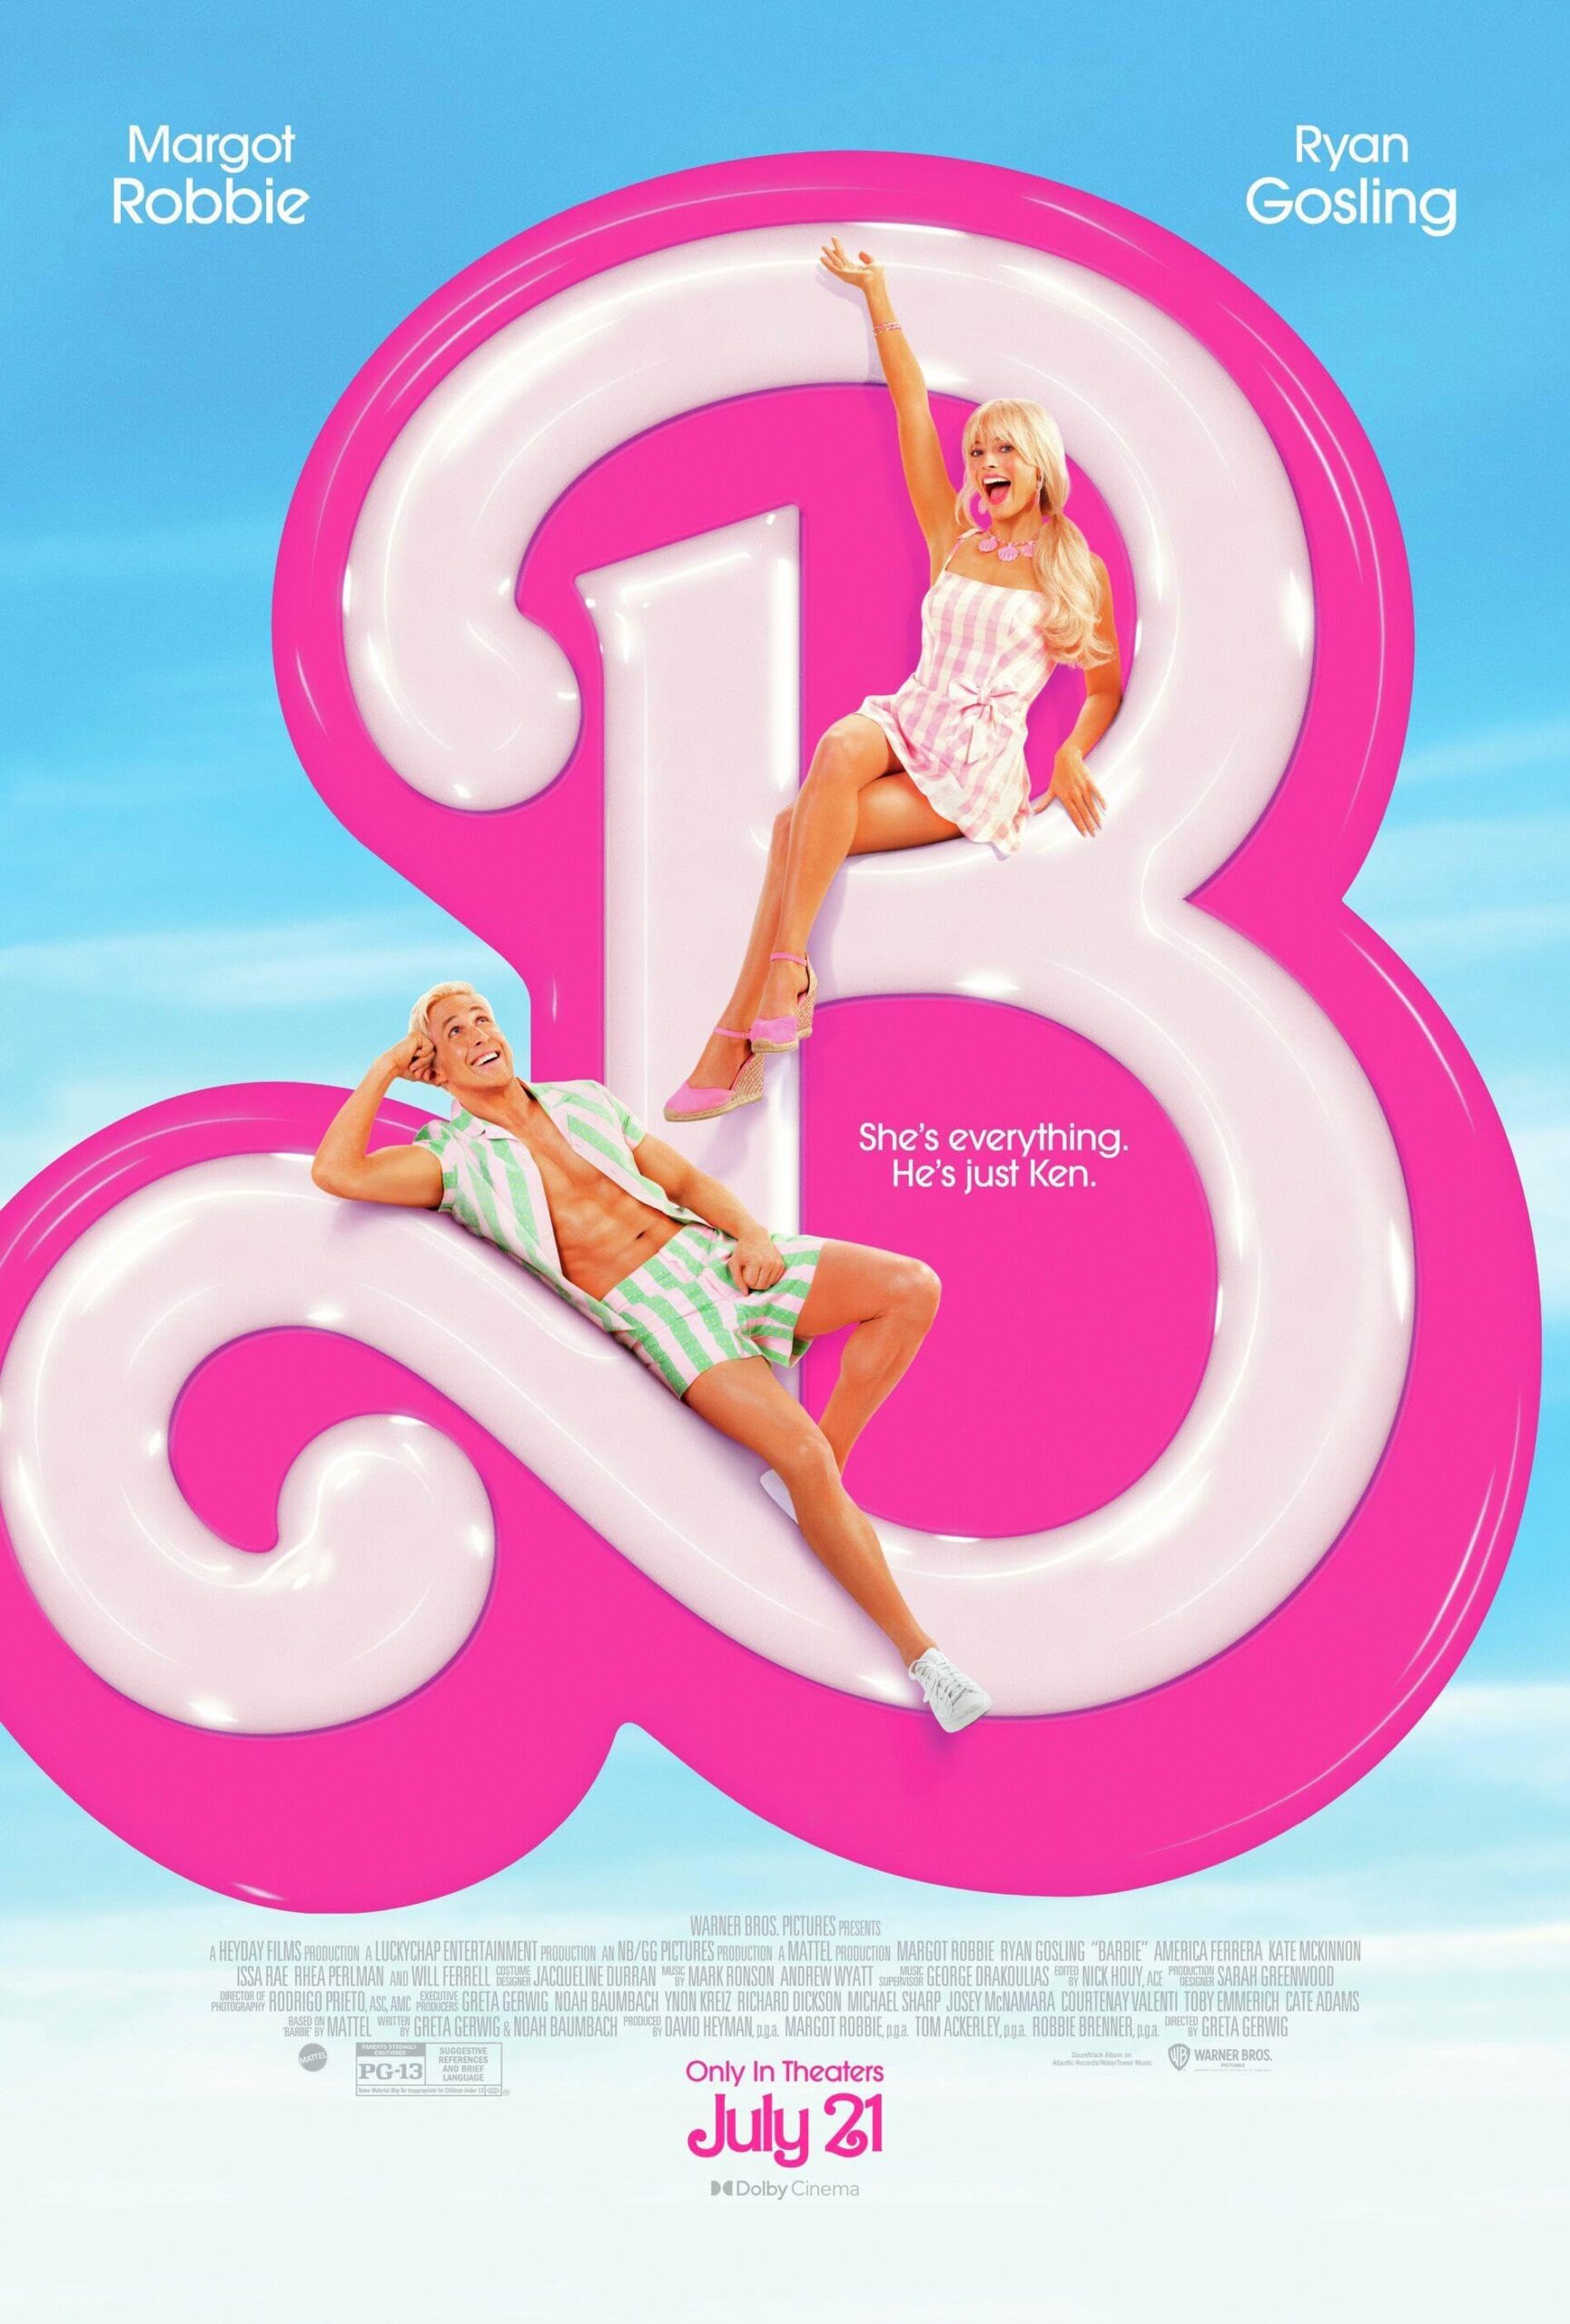 فيلم Barbie 2023 مترجم اون لاين